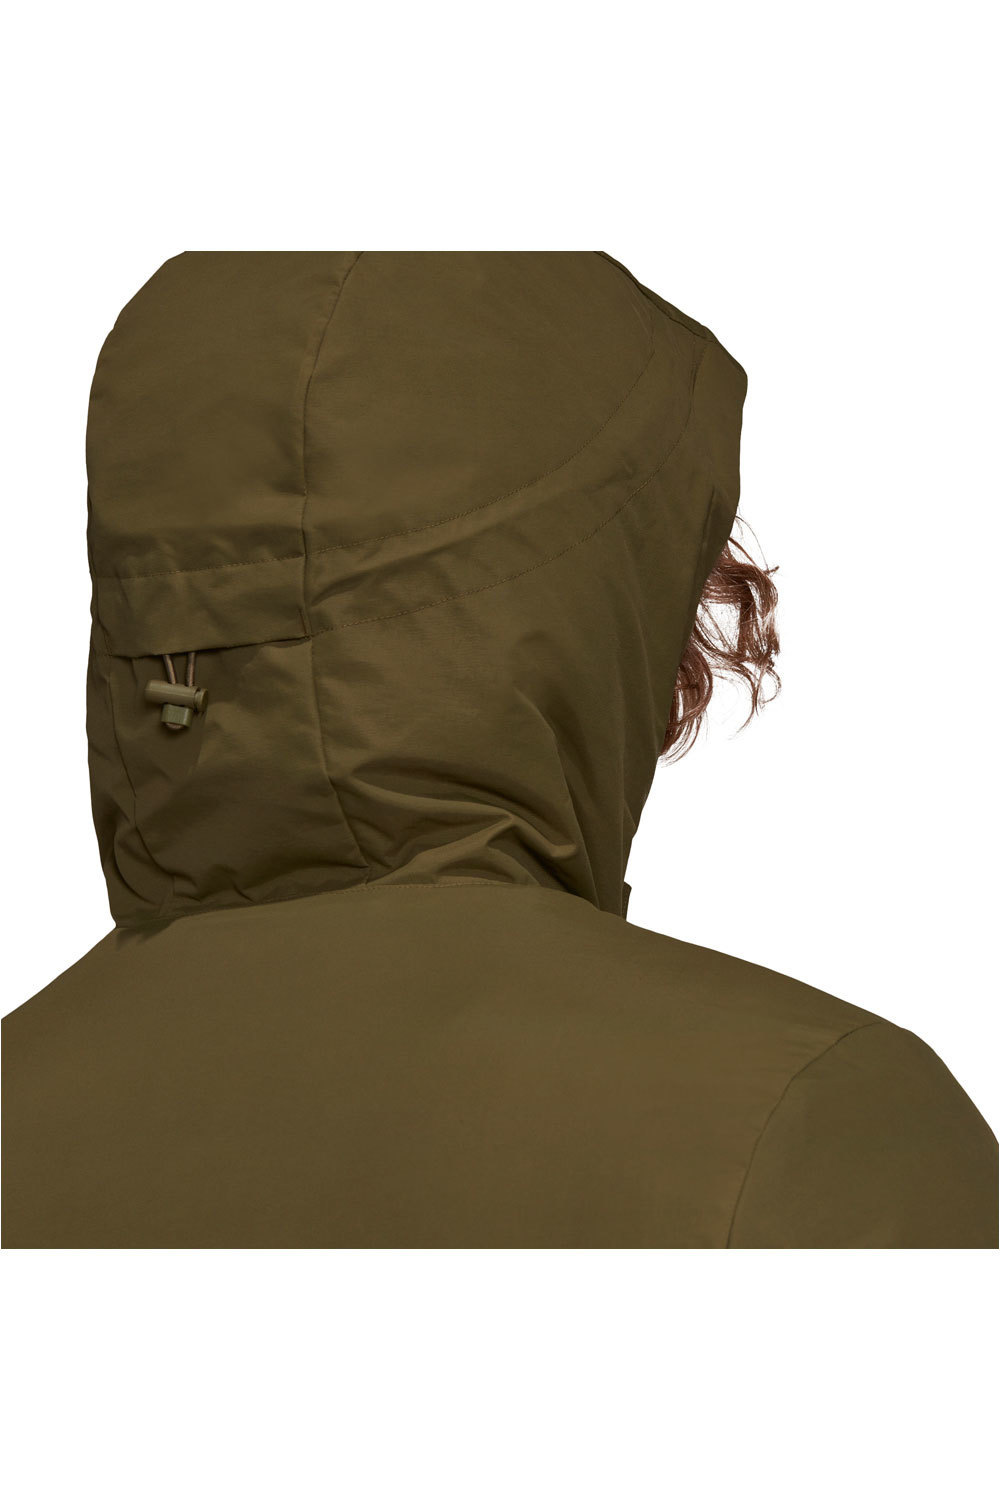 adidas chaqueta outdoor hombre Utilitas 3 bandas Unisex con capucha 04